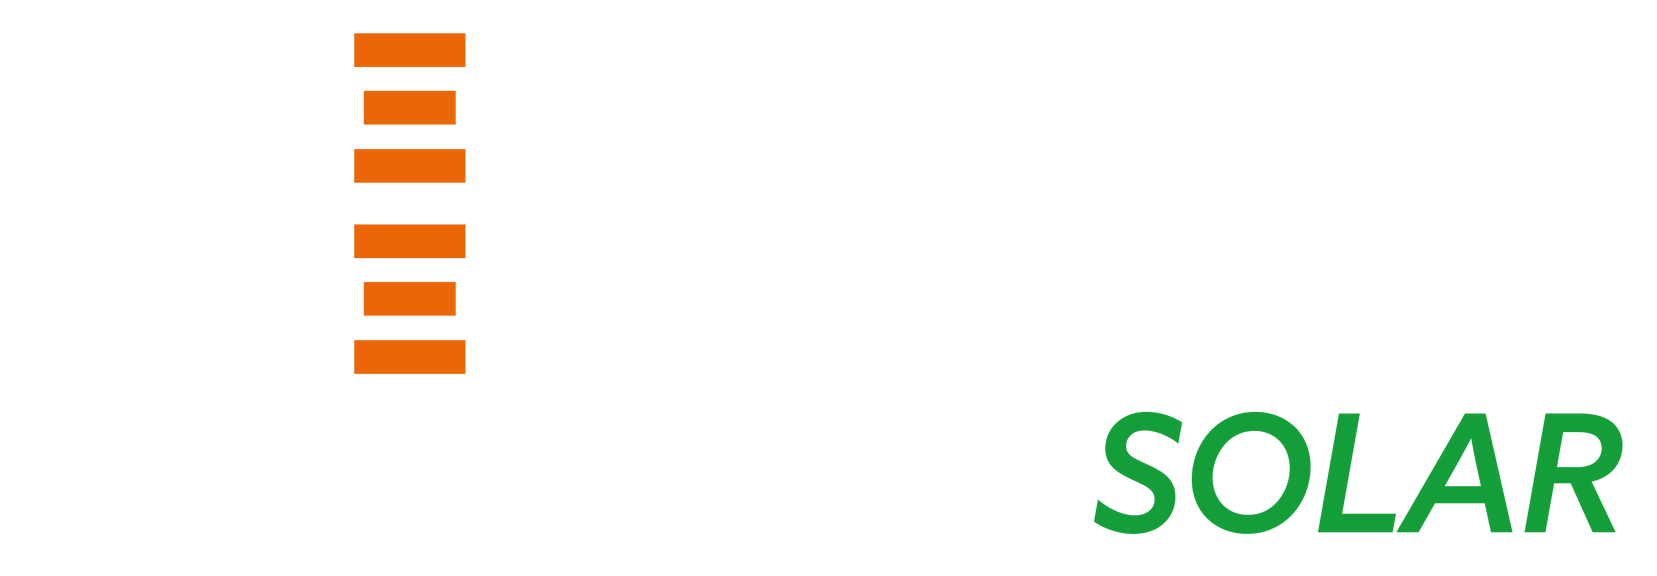 Voermans Elektro